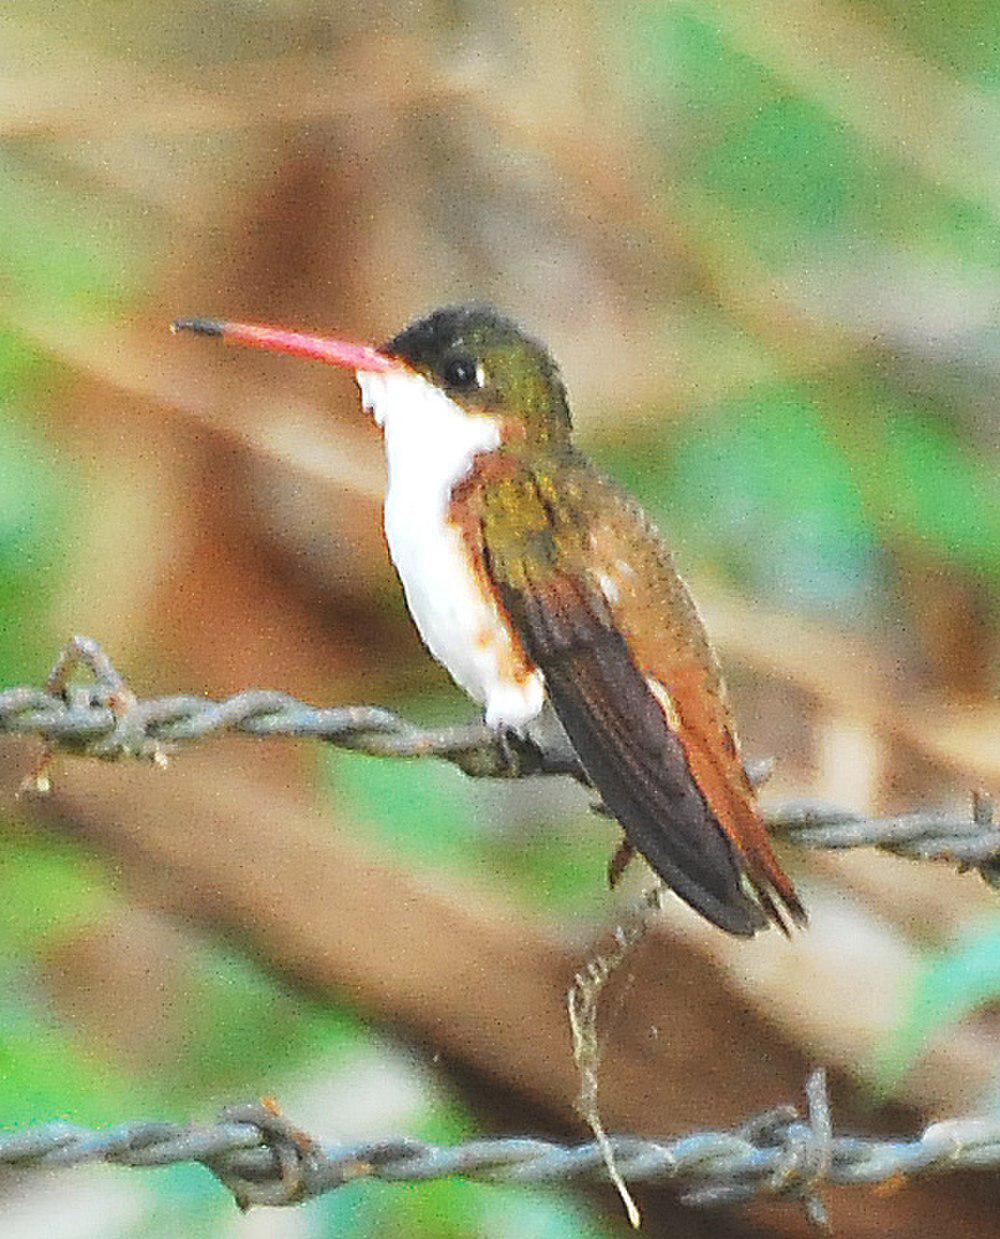 栗胁蜂鸟 / Cinnamon-sided Hummingbird / Leucolia wagneri